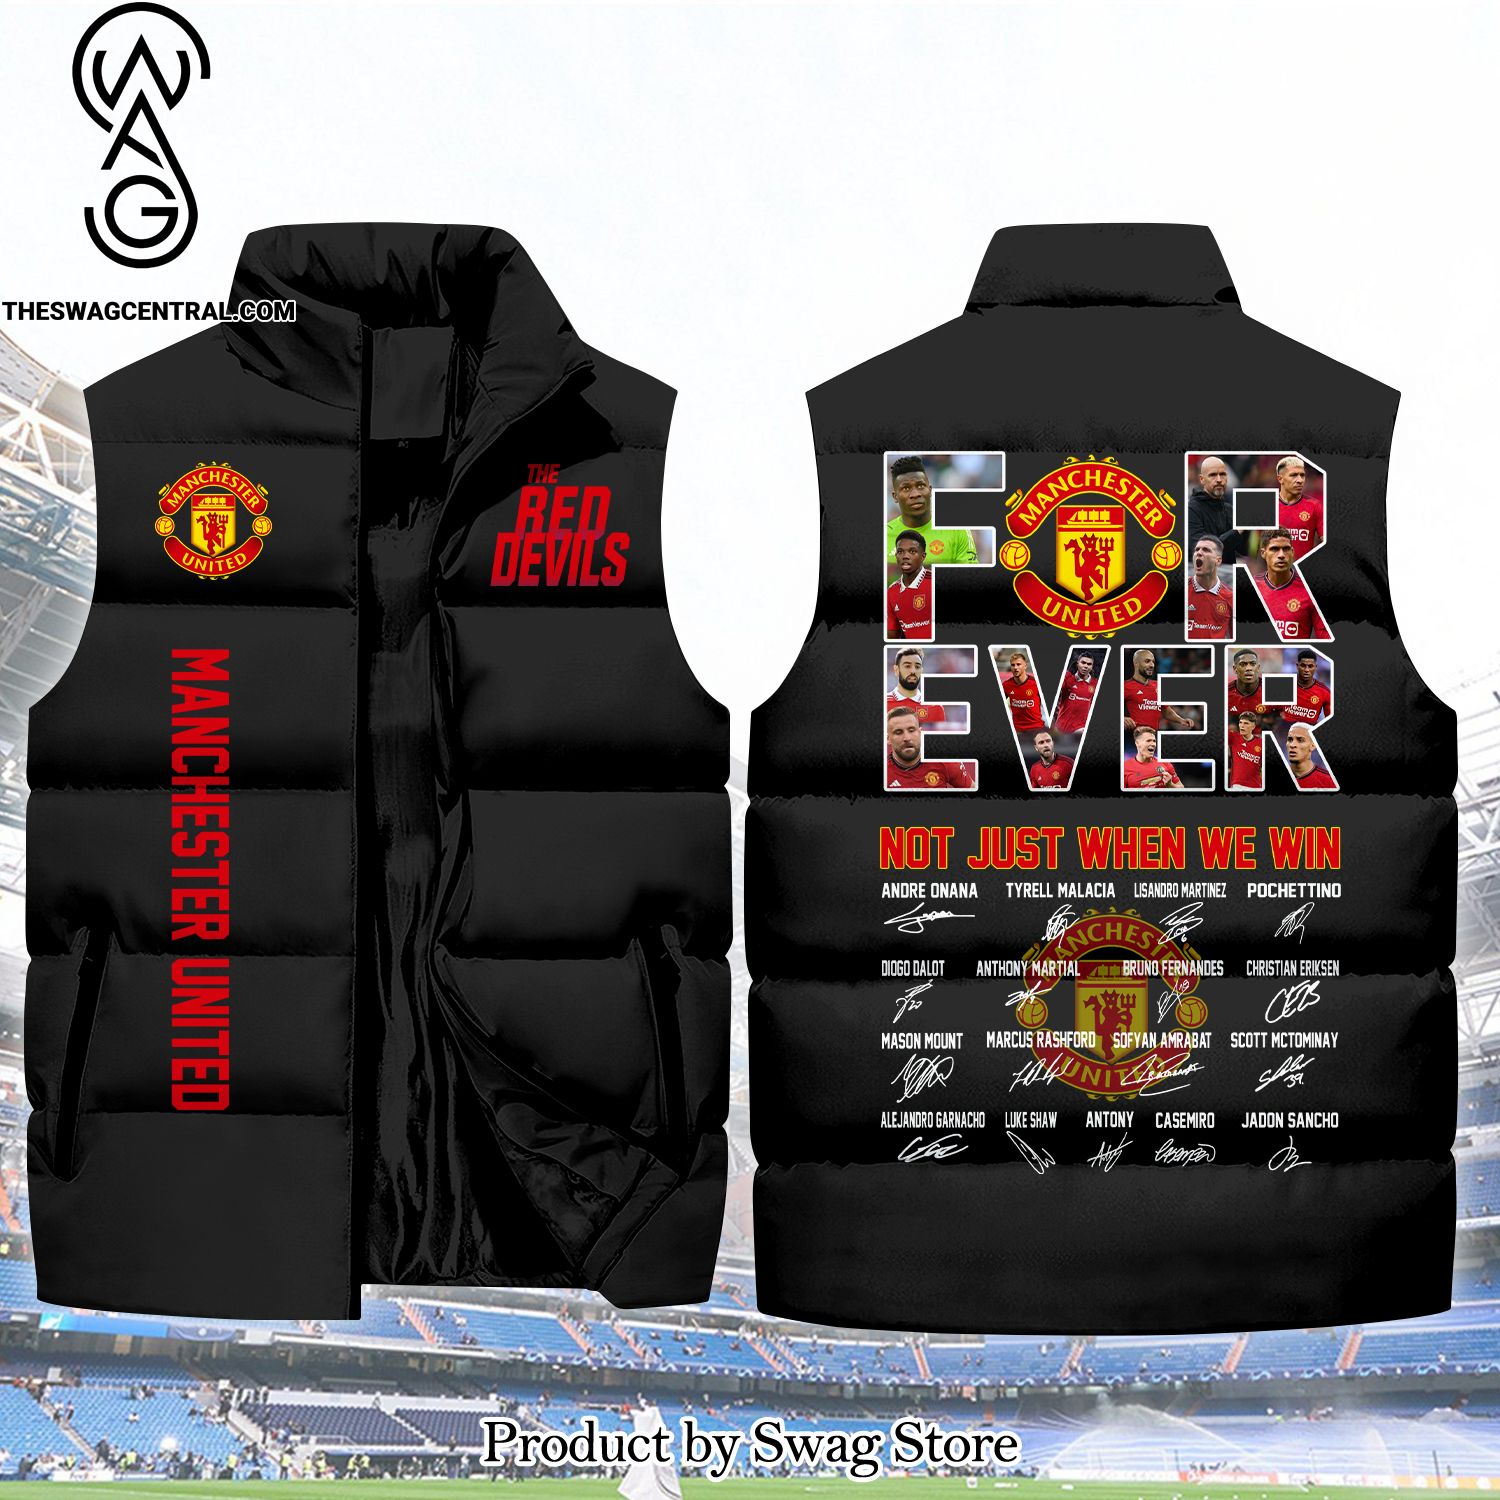 English Premier League Forever Manchester United Unisex Sleeveless Jacket